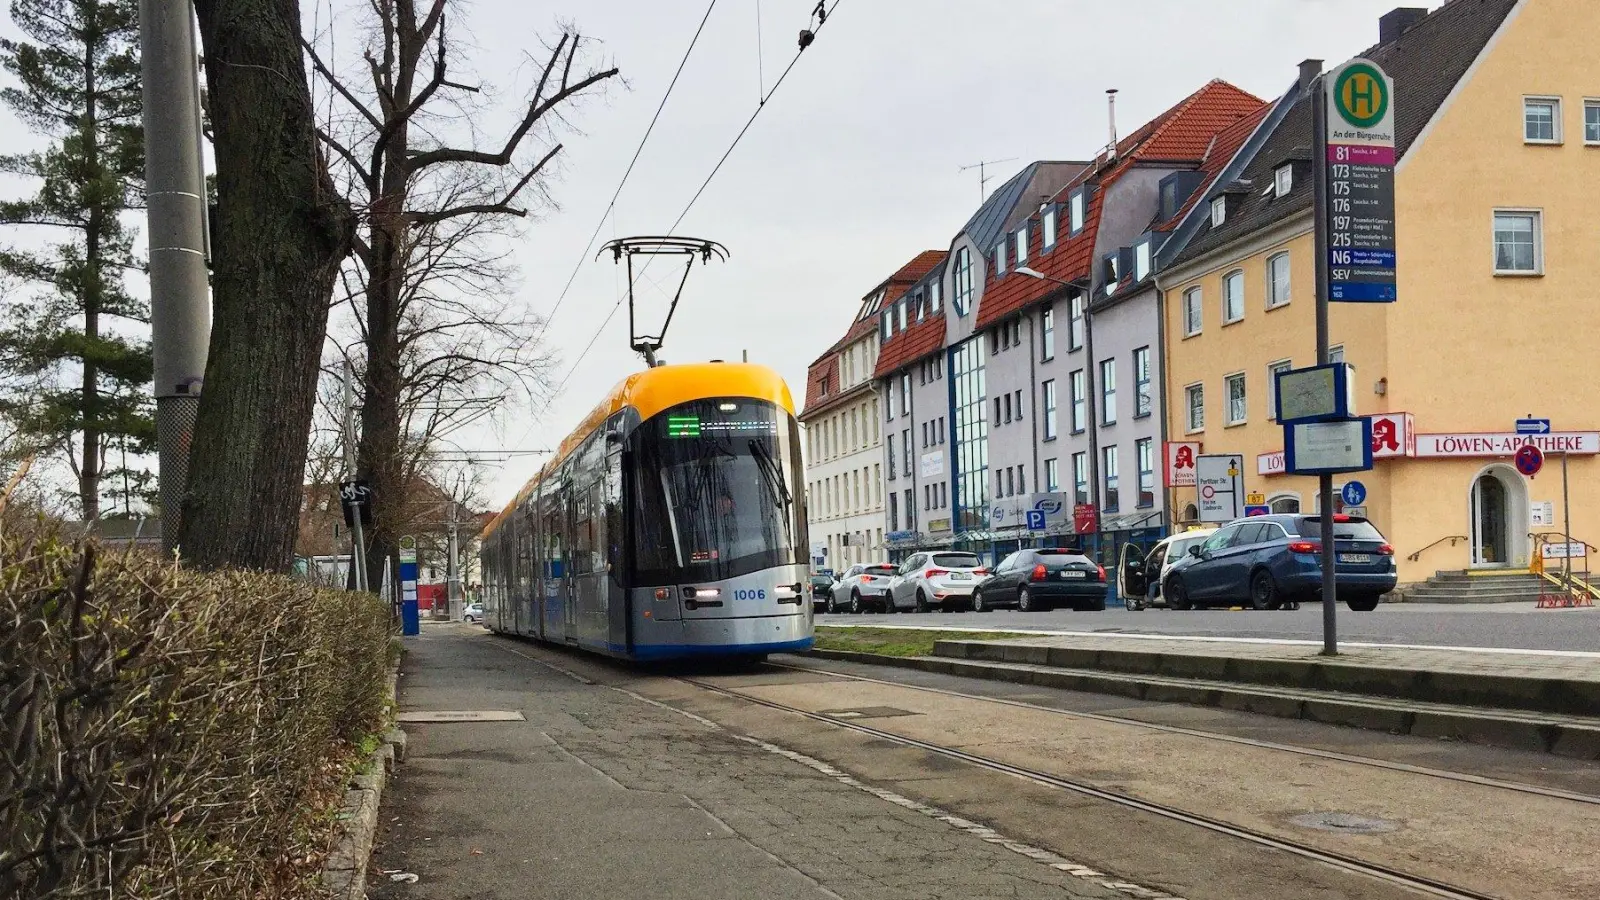 Die Straßenbahn fährt nach Taucha - aber warum eigentlich? (Foto: taucha-kompakt.de)